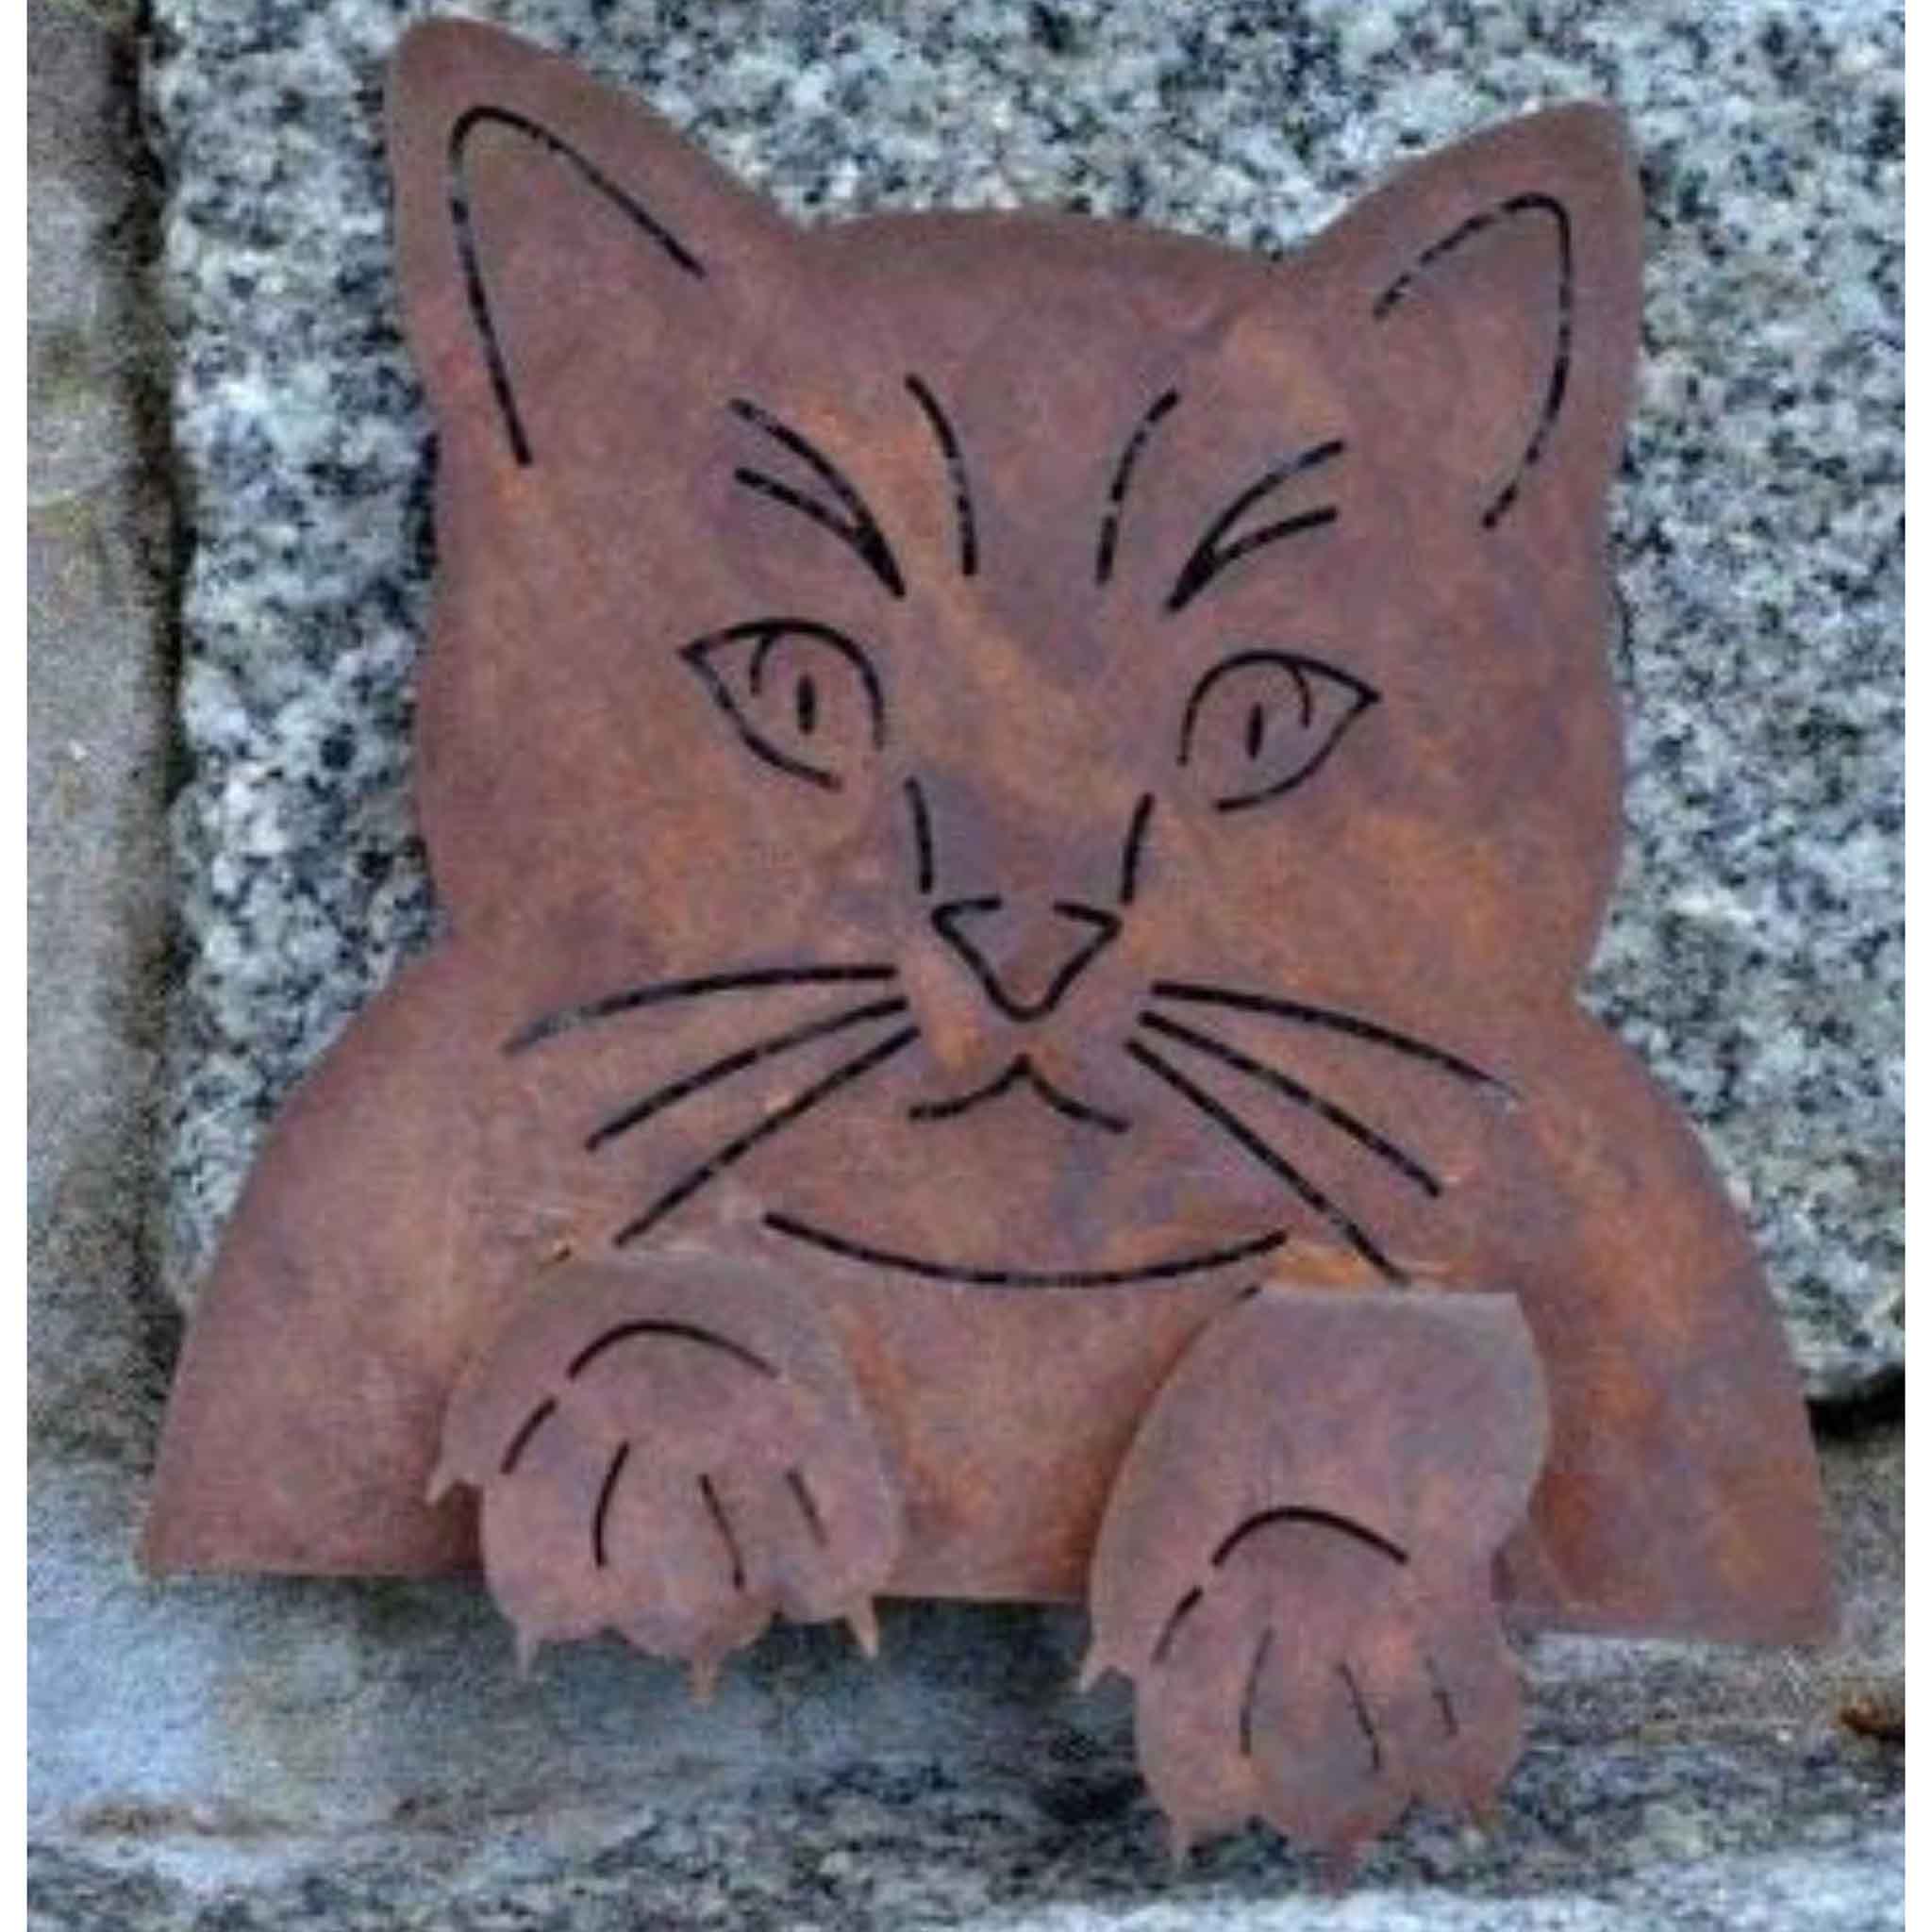 Metall-Katze als Zaunhocker - Handgefertigte Rostdeko für Draußen